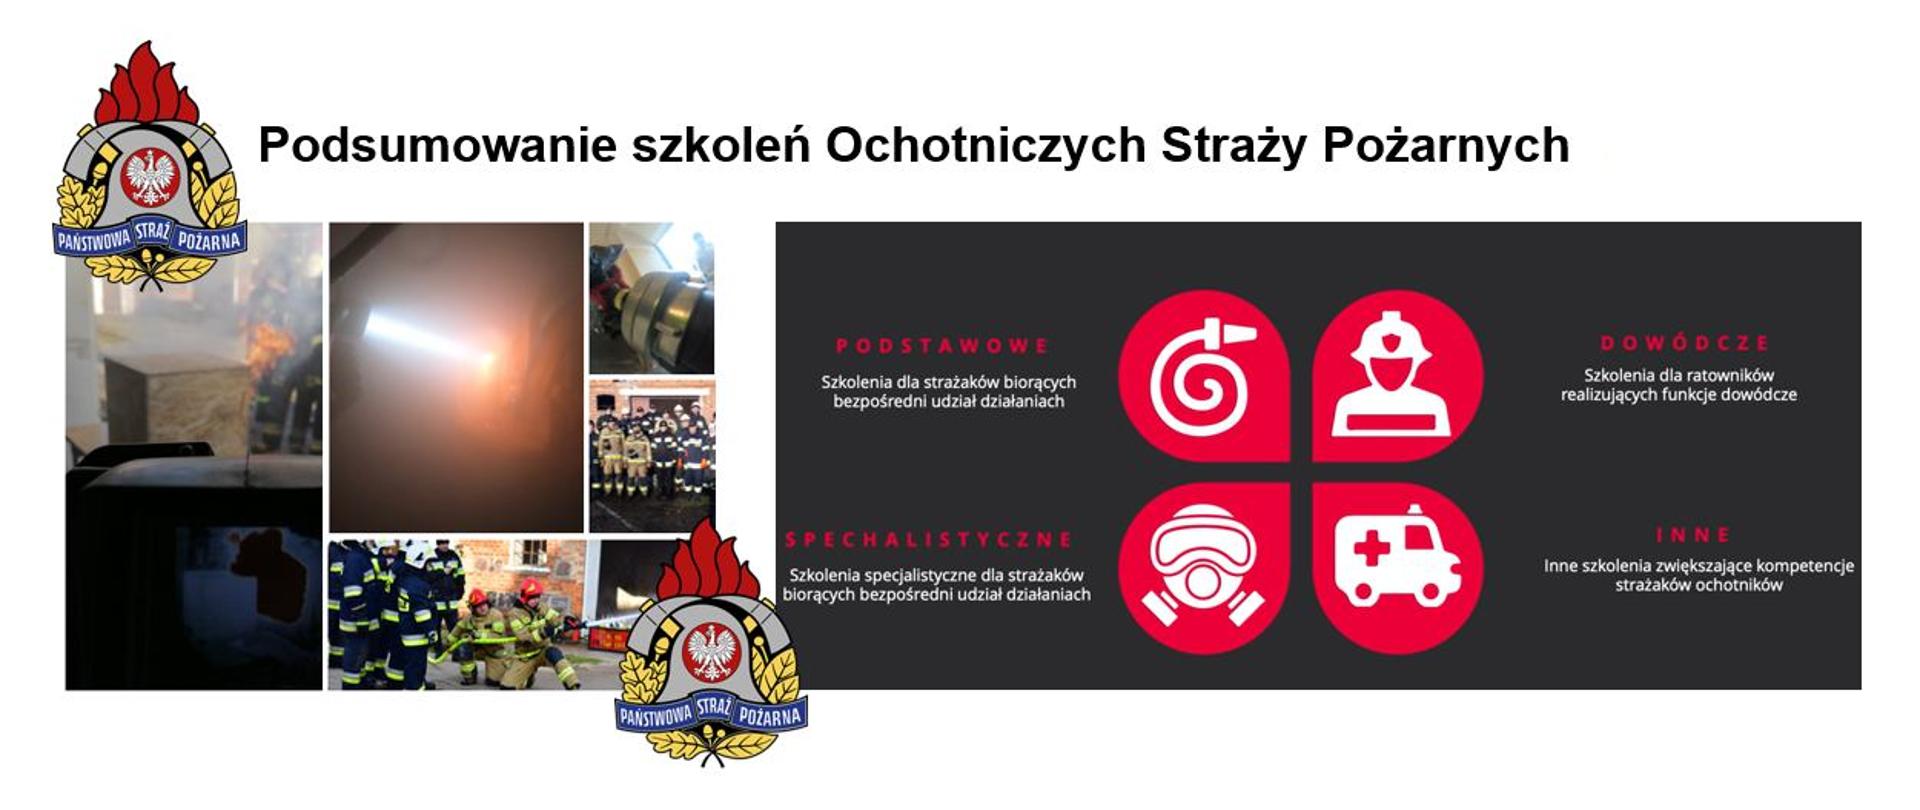 Infografika ze zdjęciami wykonanymi podczas szkoleń OSP. Z lewej strony logo PSP a obok napis "Podsumowanie szkoleń Ochotniczych Straży Pożarnych".